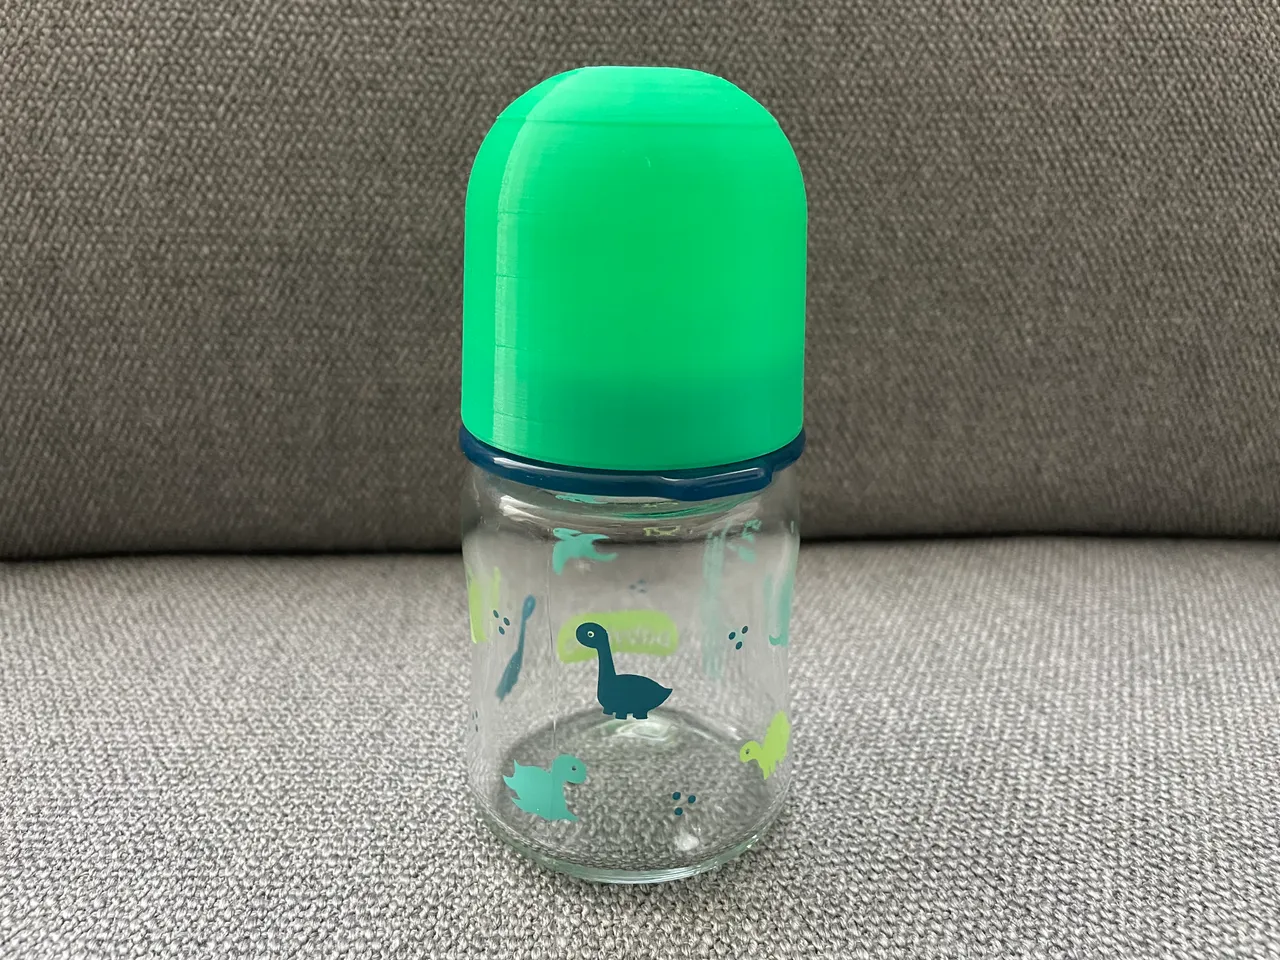 FORMSKÖN Water bottle, clear glass/yellow, 17 oz - IKEA